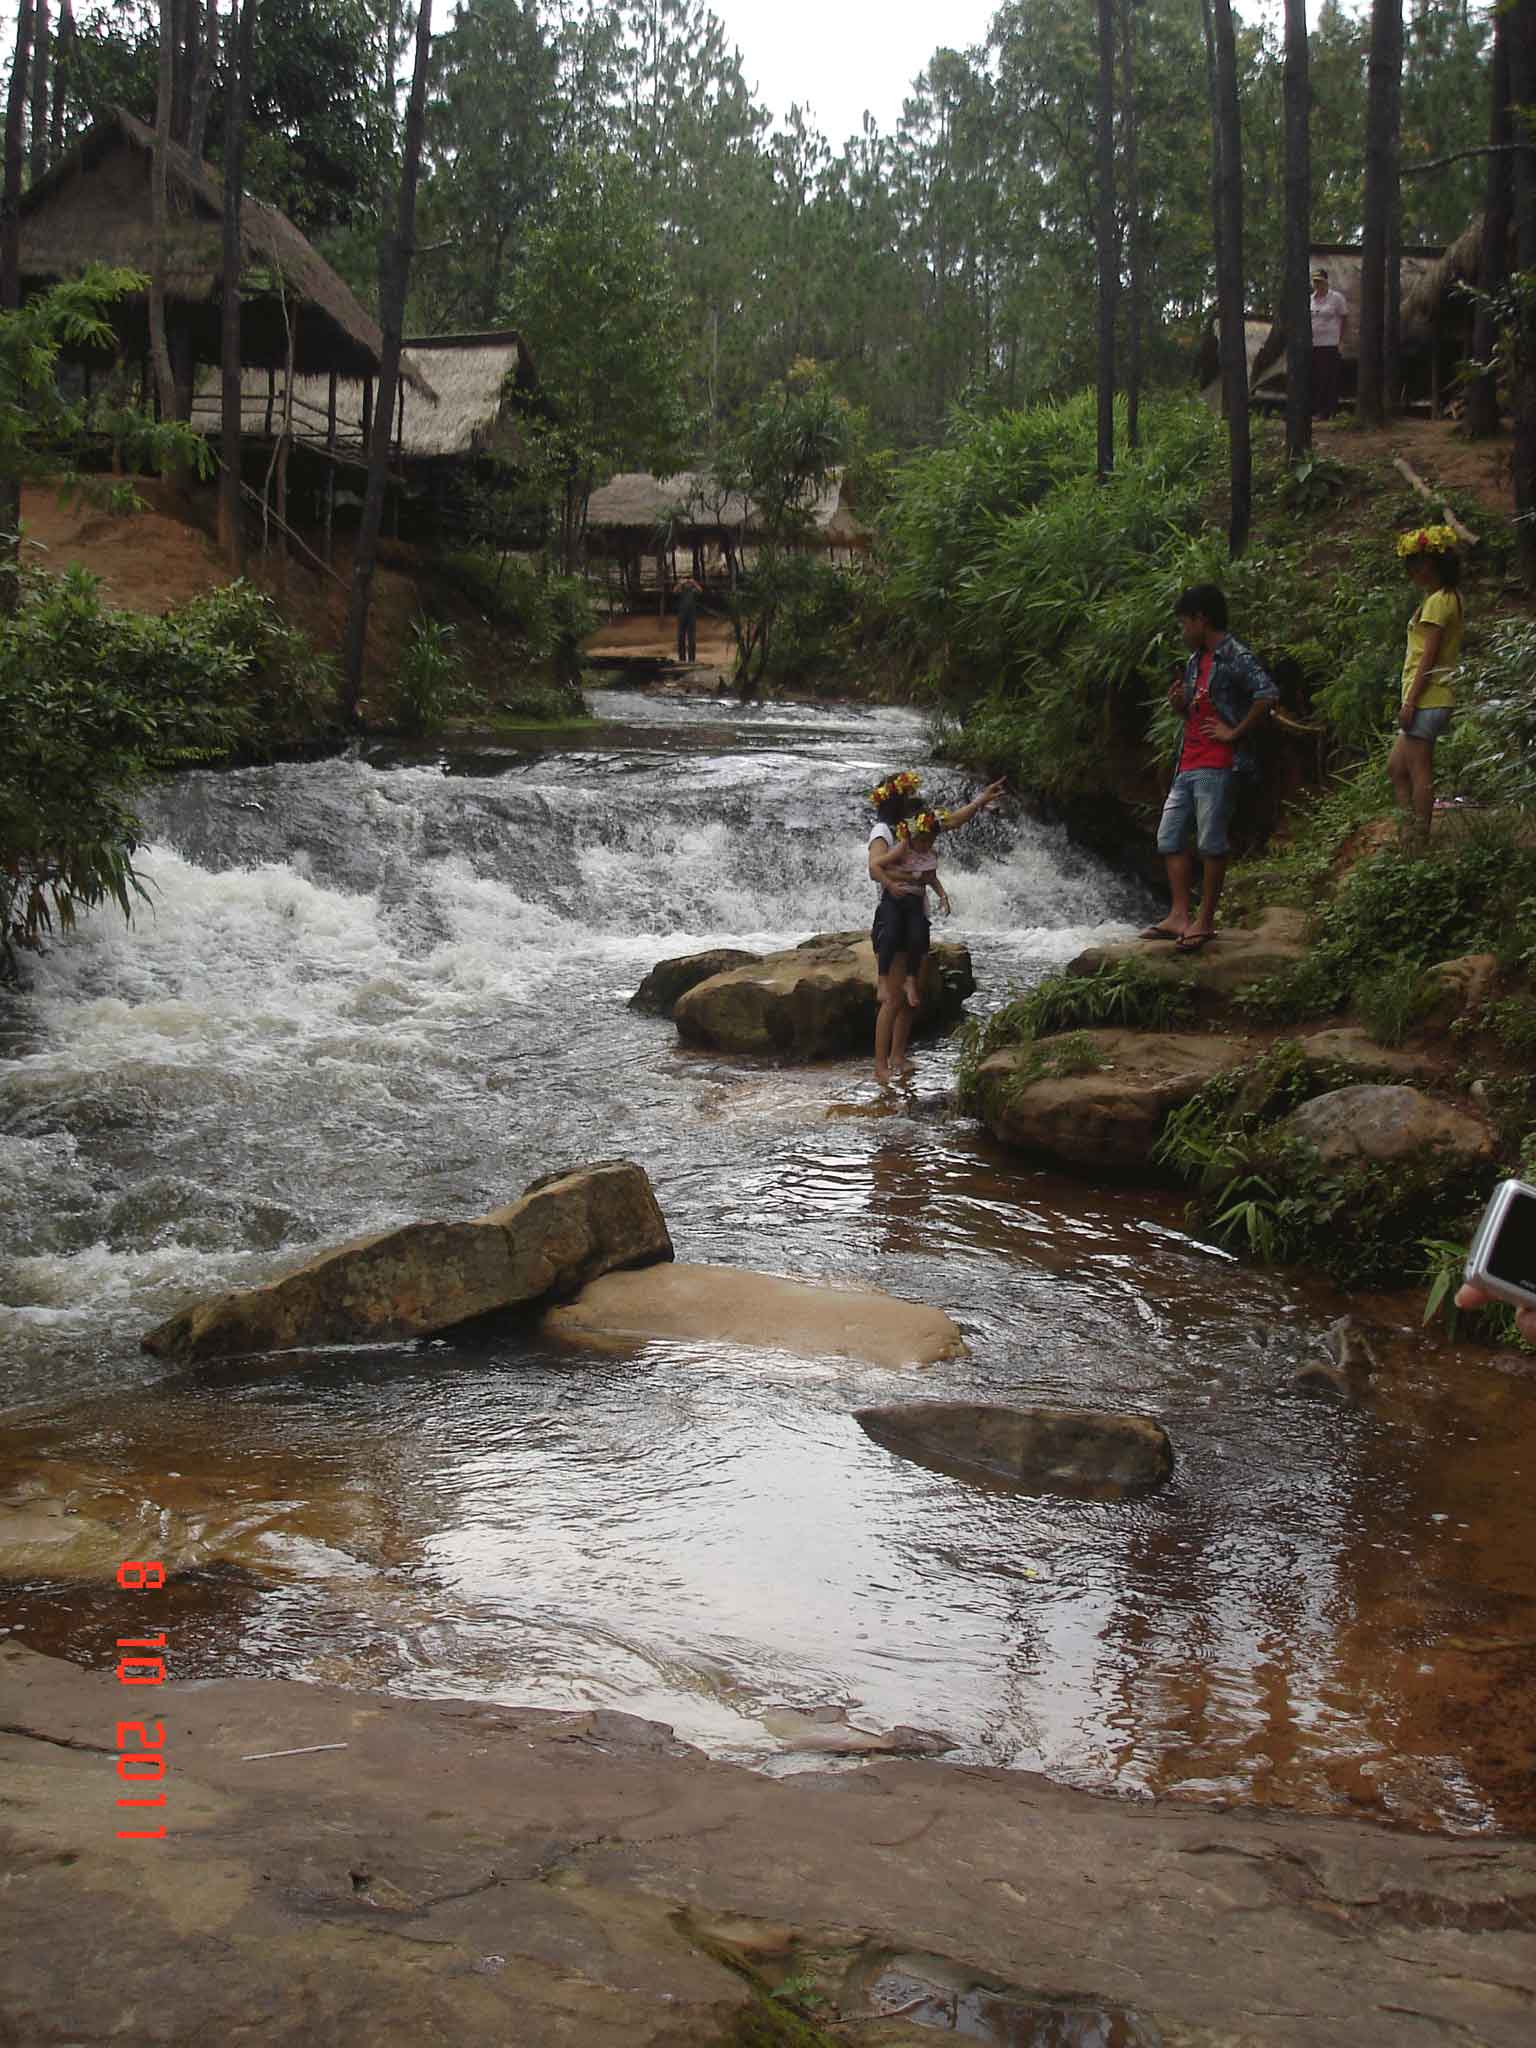 Khmer family enjoying the waterfall and running stream